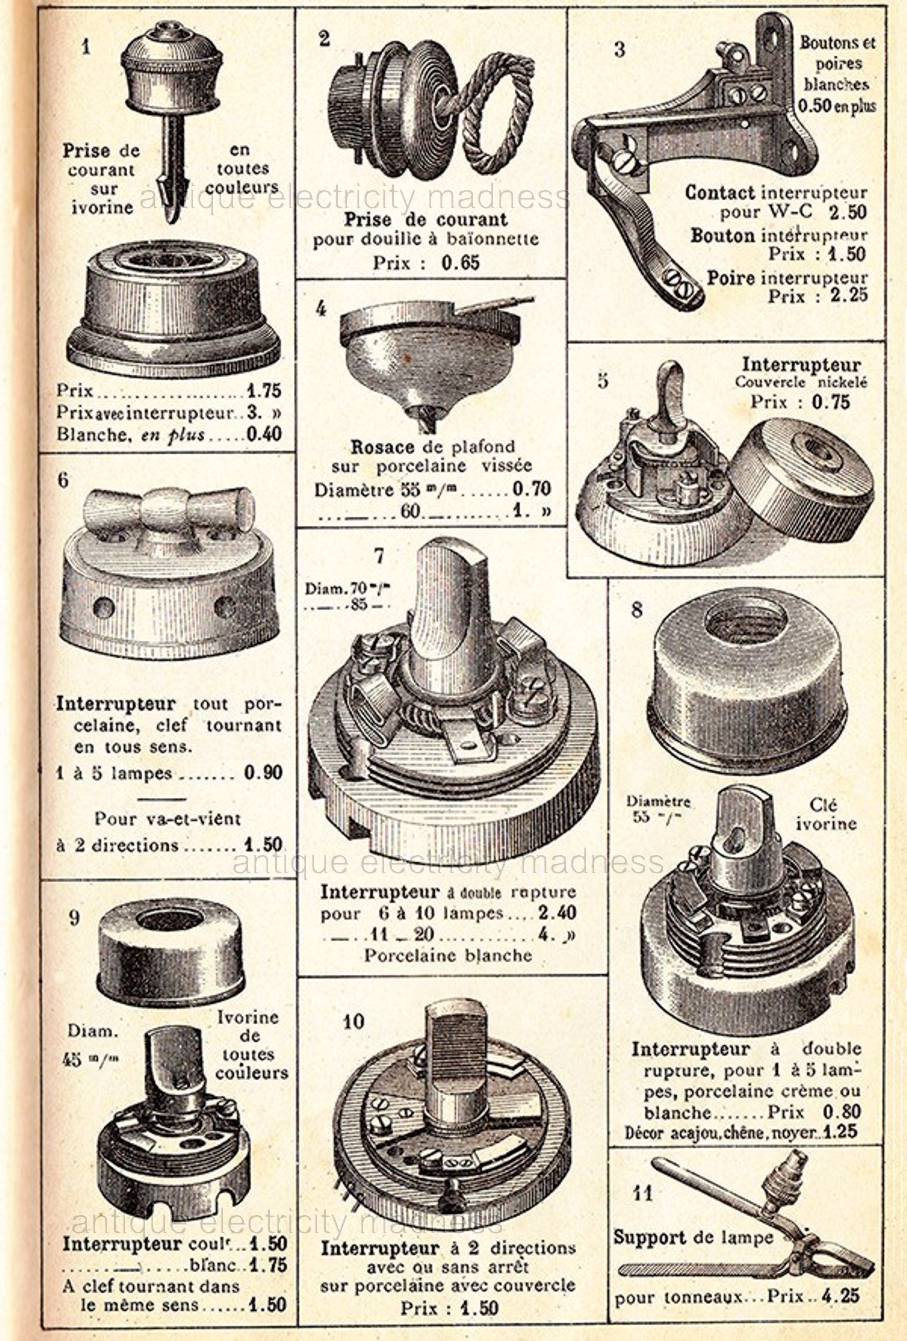 Interrupteurs anciens en porcelaine - Extraits du catalogue français "BAZAR de l'hotel de Ville" de Paris en 1938